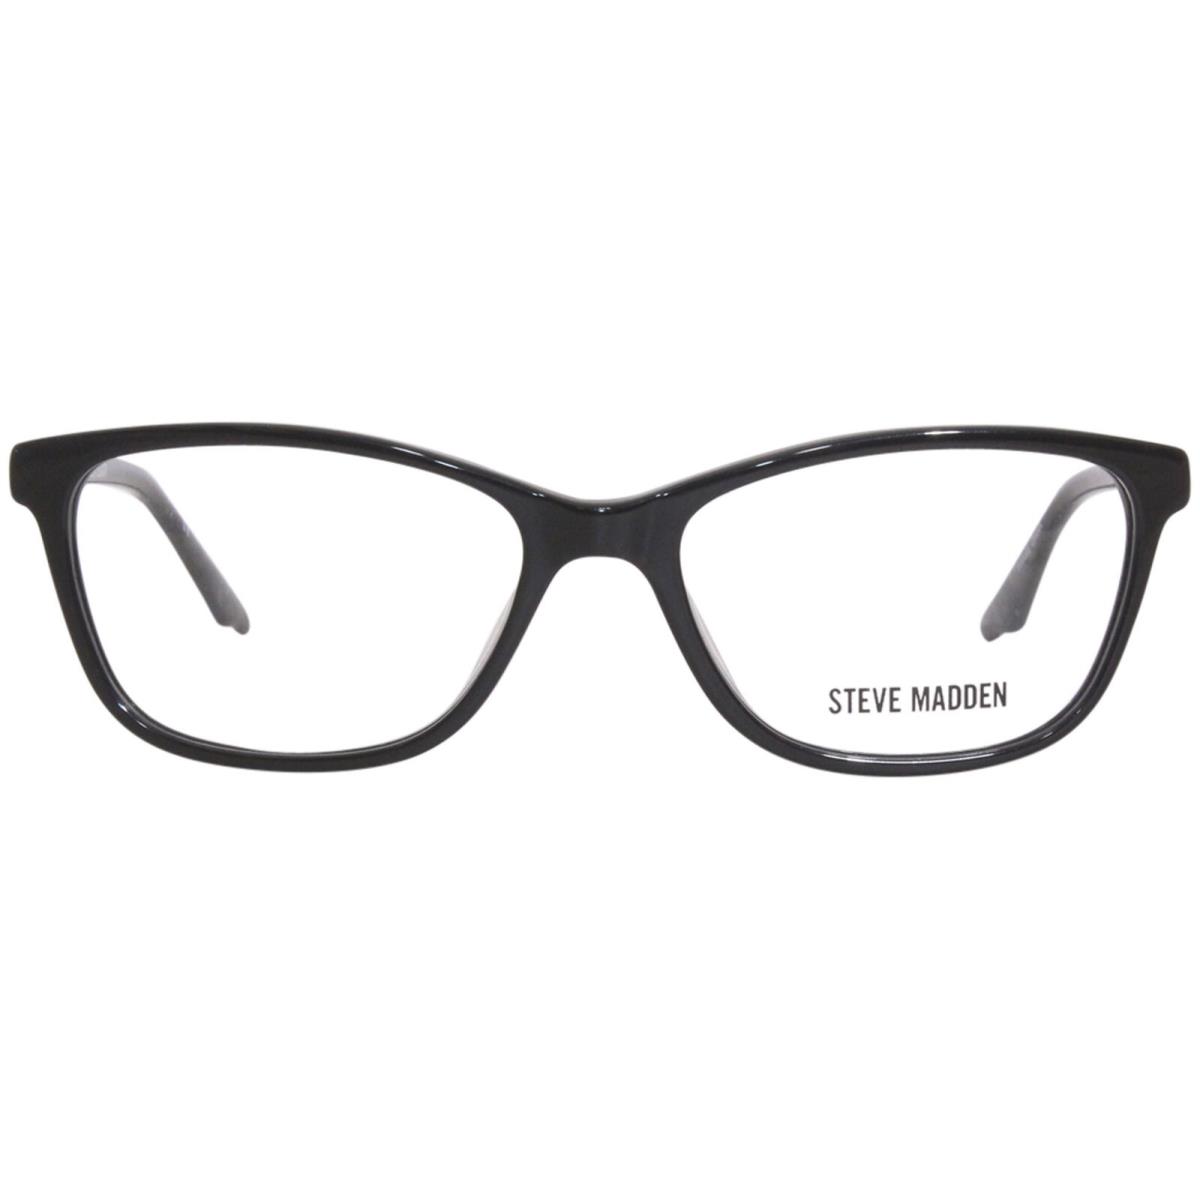 Steve Madden Chulla Eyeglasses Frame Women`s Black Full Rim Cat Eye 52mm